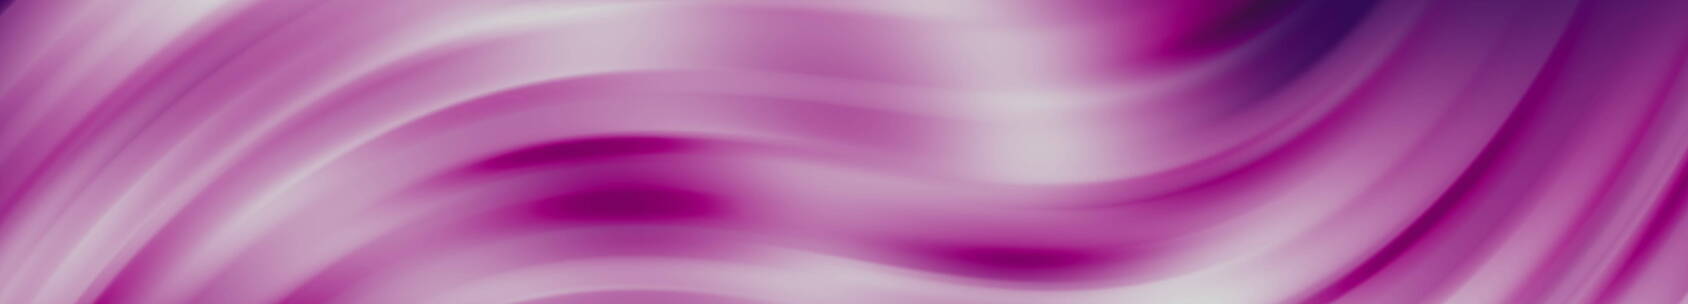 紫色波纹效果大屏展示素材